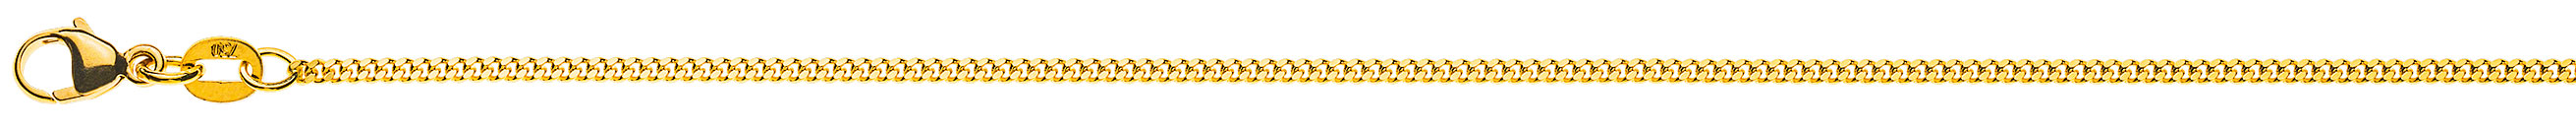 AURONOS Prestige Halskette Gelbgold 18K Panzerkette geschliffen 45cm 1.6mm